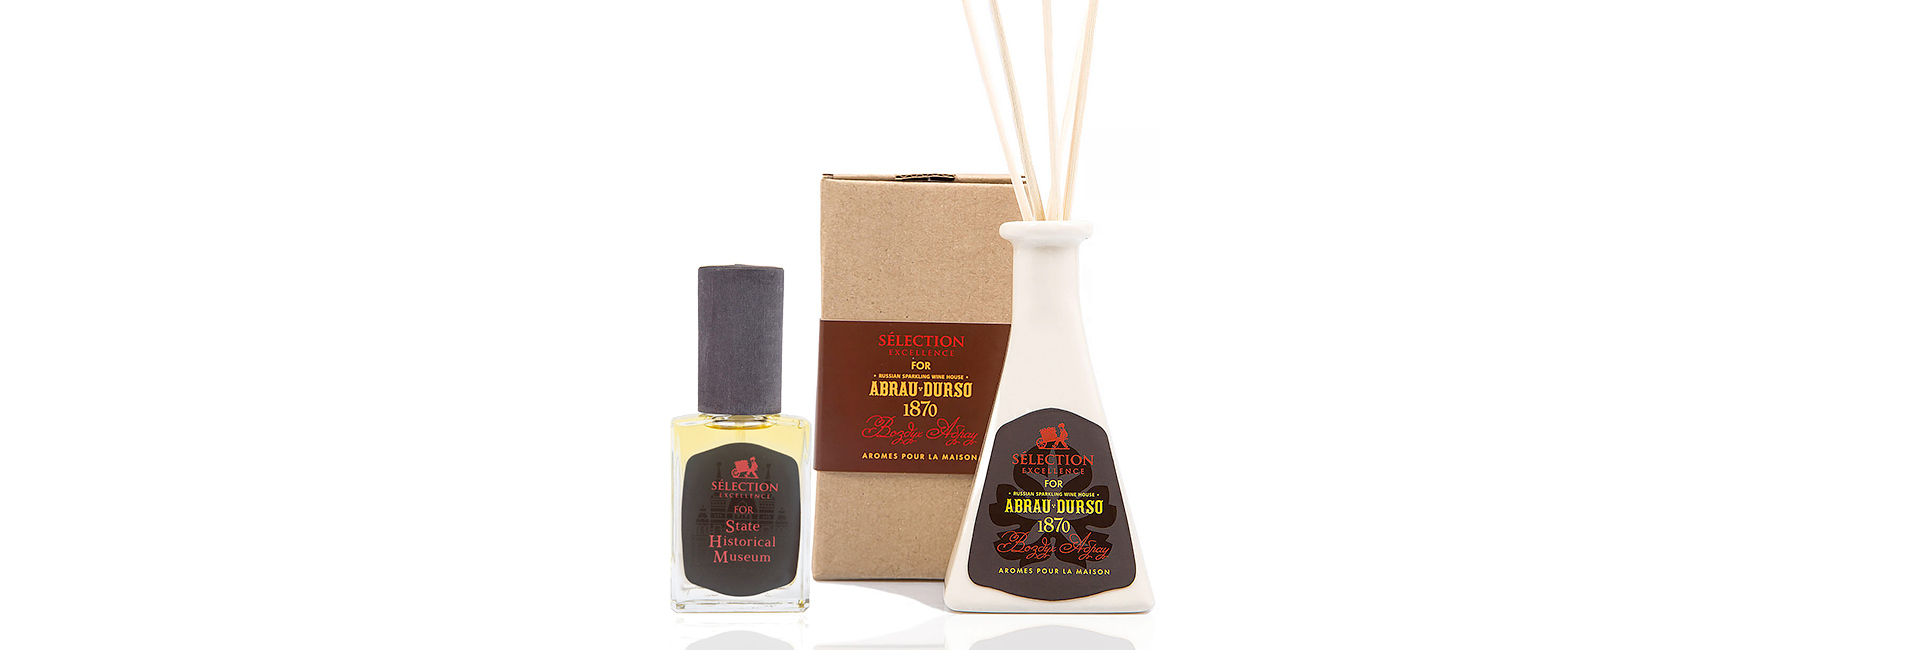 Крім духів Selection Excellence випускає аромати для дому та гелі для душу, а також ознайомчі парфумерні сети по 3 мл